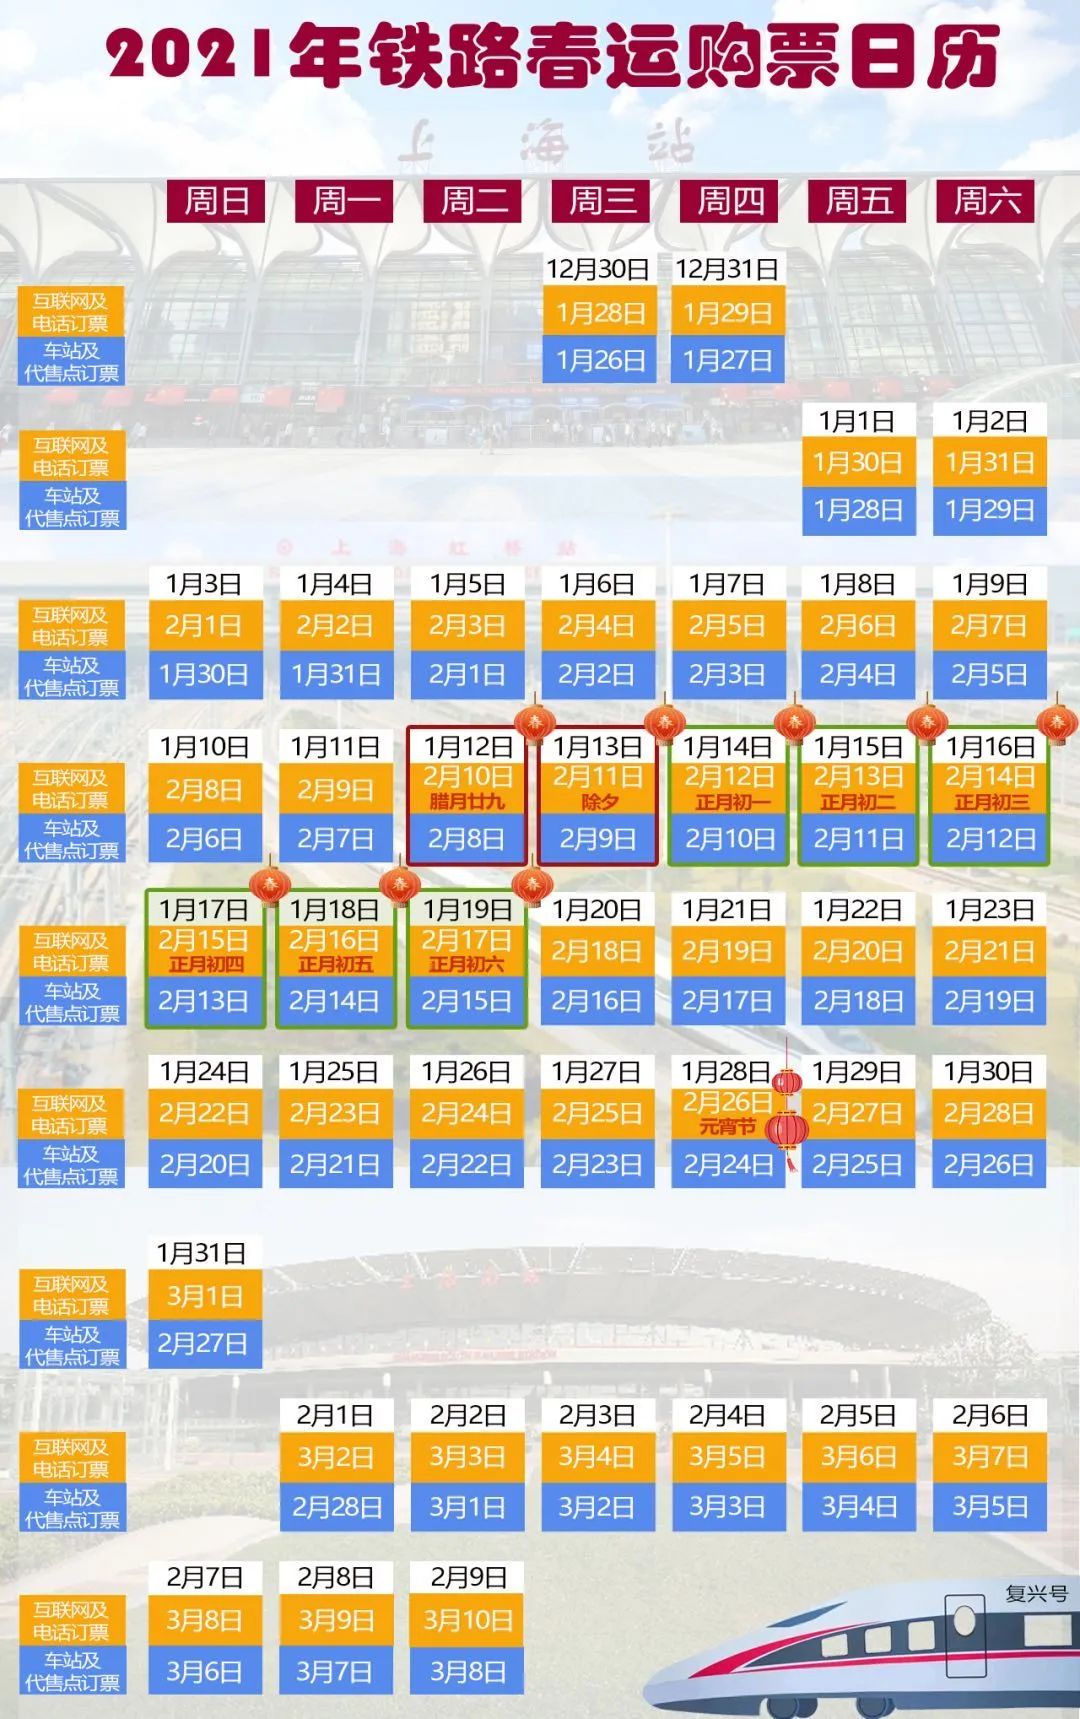 黄色为线上可购日期，蓝色为线下可购日期。图片来源：铁路上海站